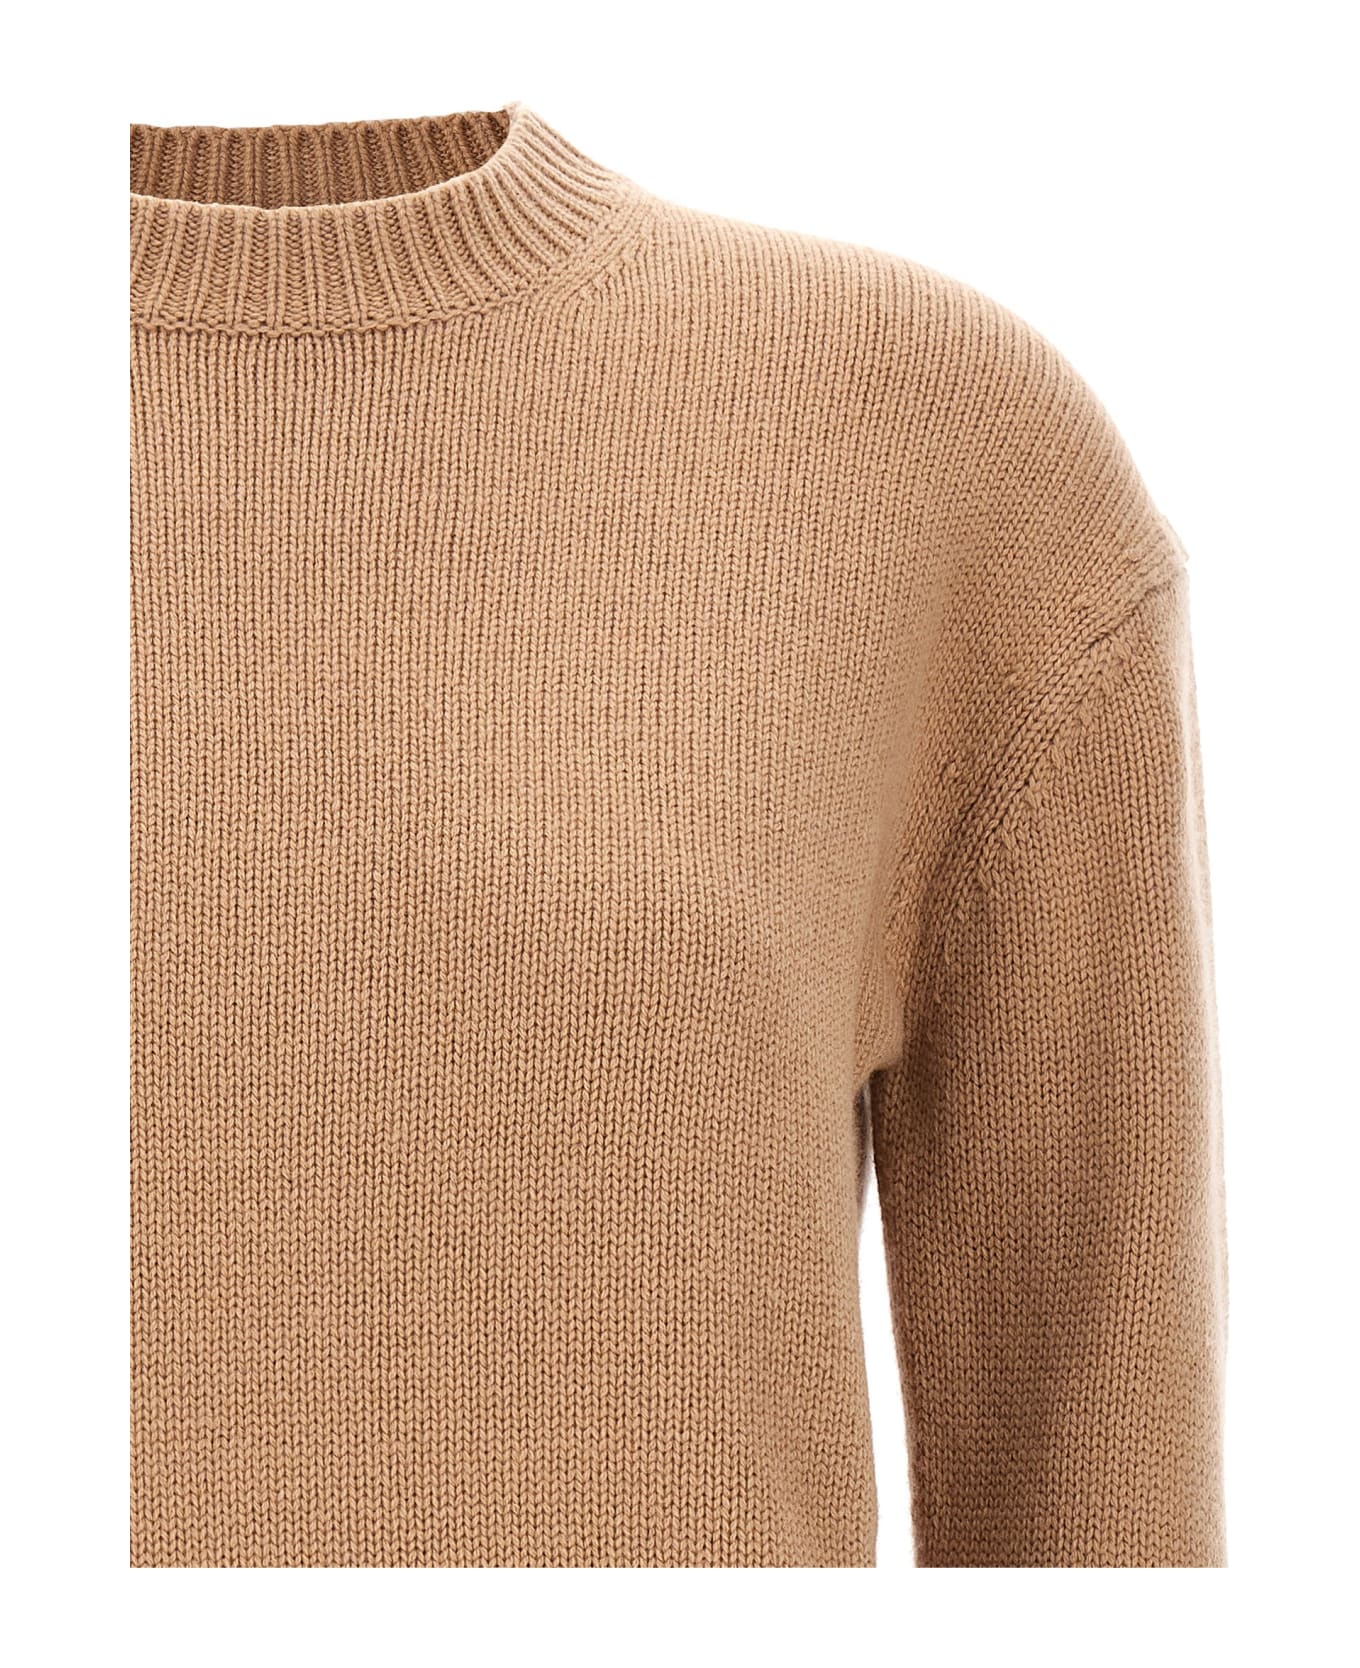 'S Max Mara 'irlanda' Sweater - Beige ニットウェア